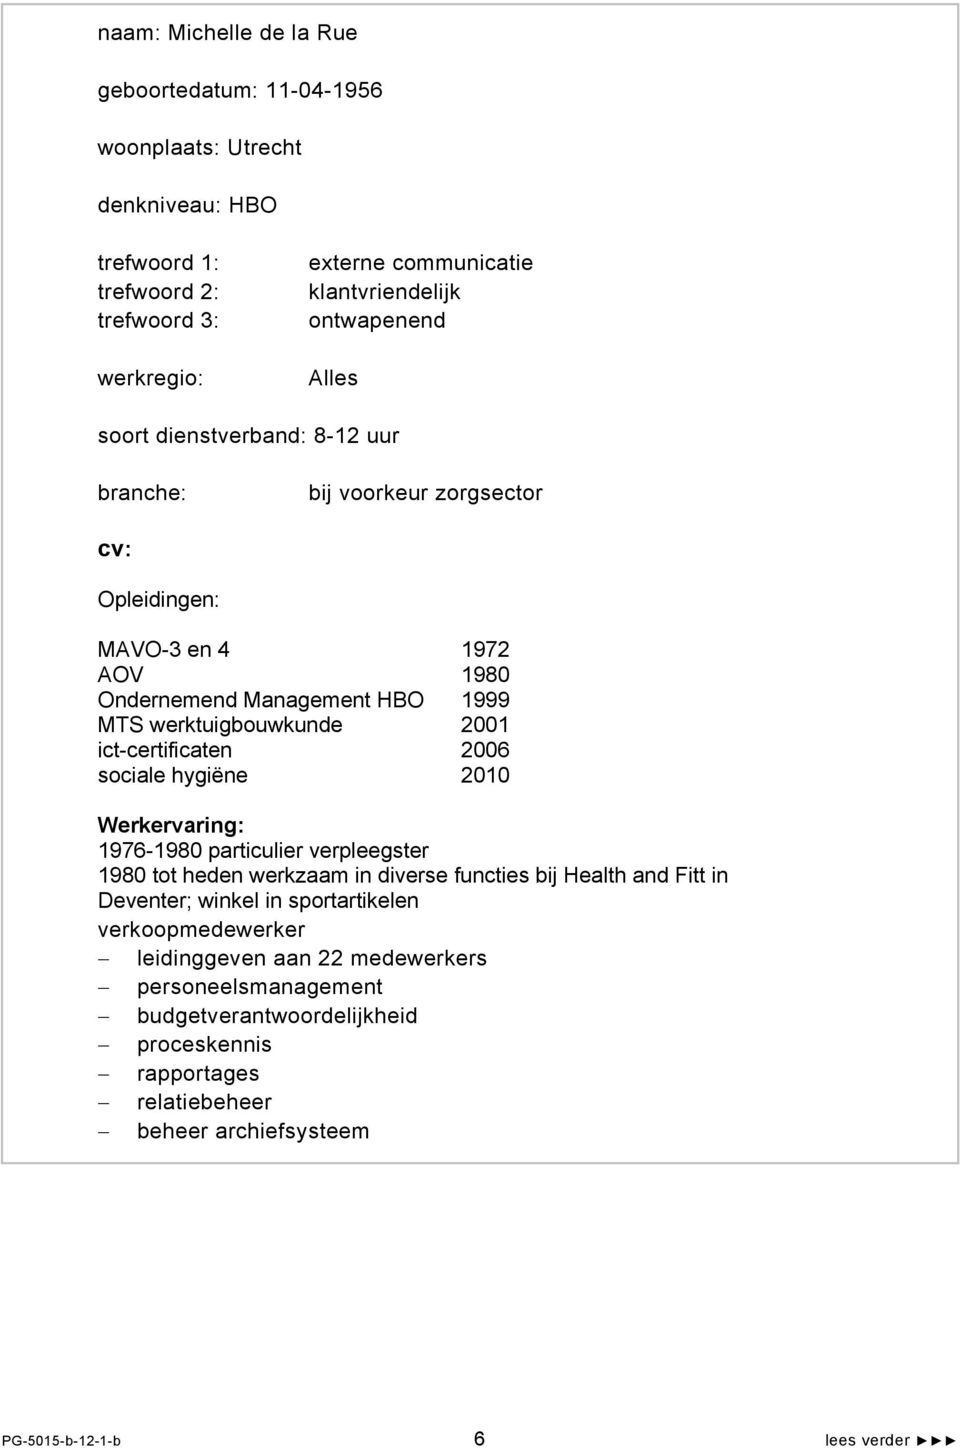 ict-certificaten 2006 sociale hygiëne 2010 Werkervaring: 1976-1980 particulier verpleegster 1980 tot heden werkzaam in diverse functies bij Health and Fitt in Deventer; winkel in